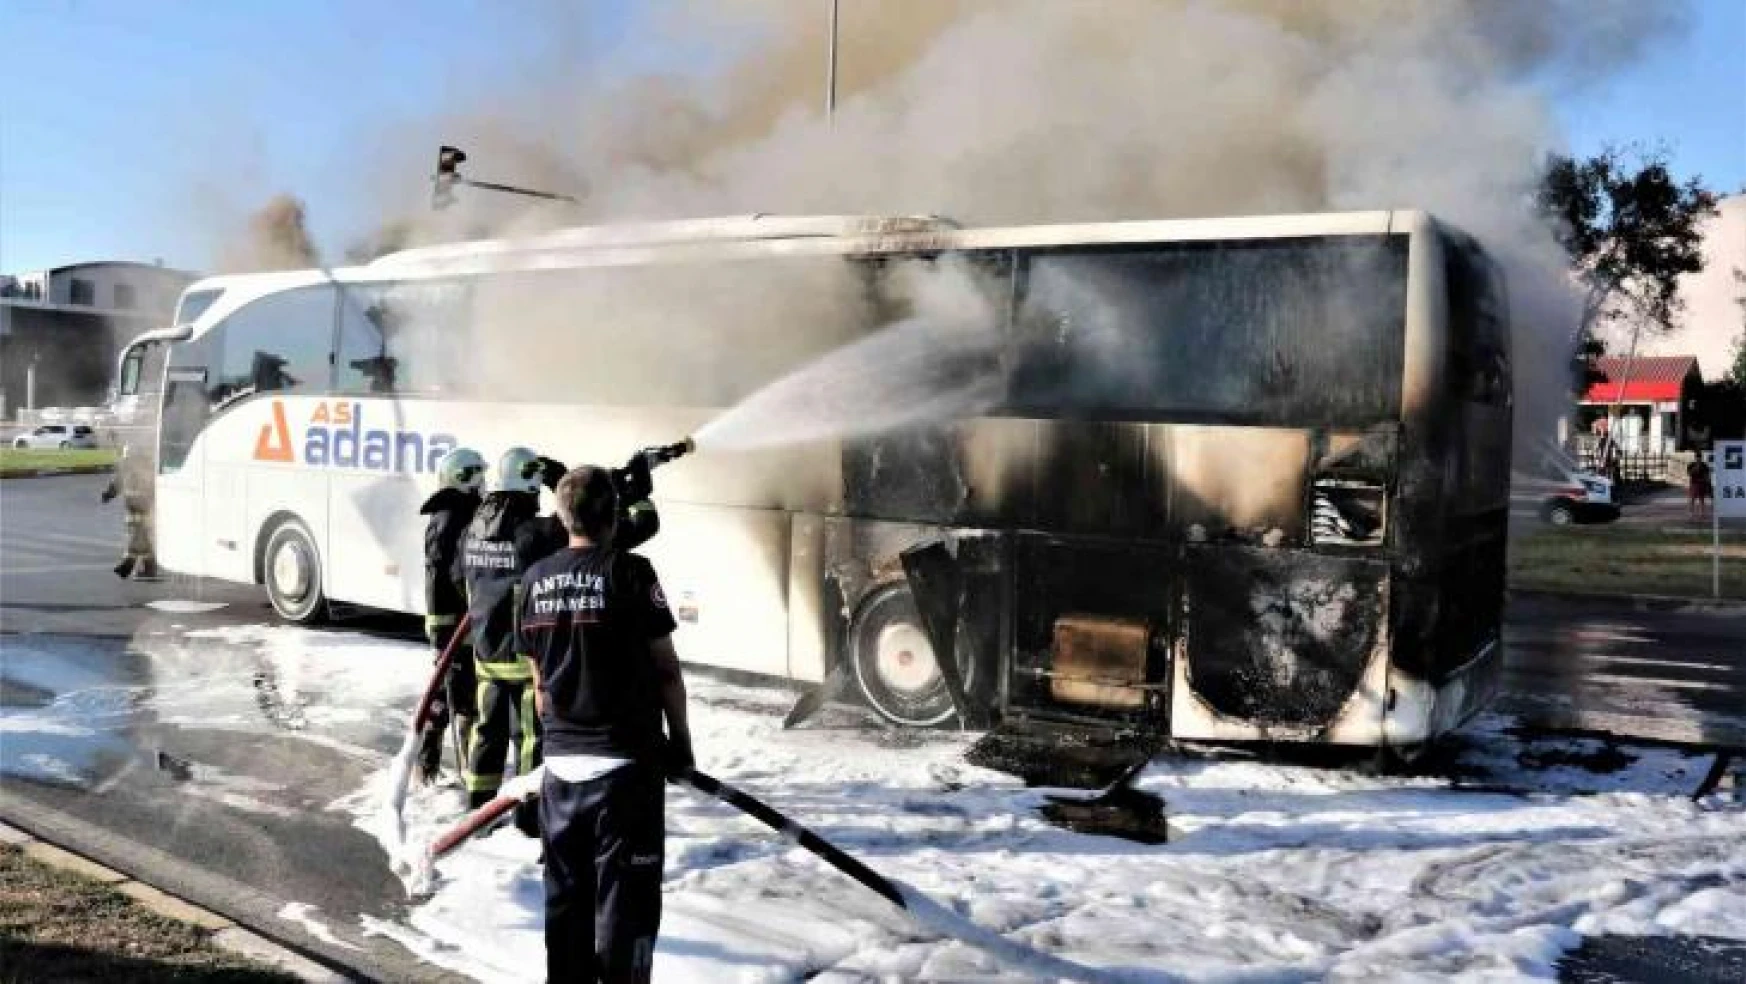 Otogara yolcu almaya giden şehirlerarası yolcu otobüsü alev alev yandı